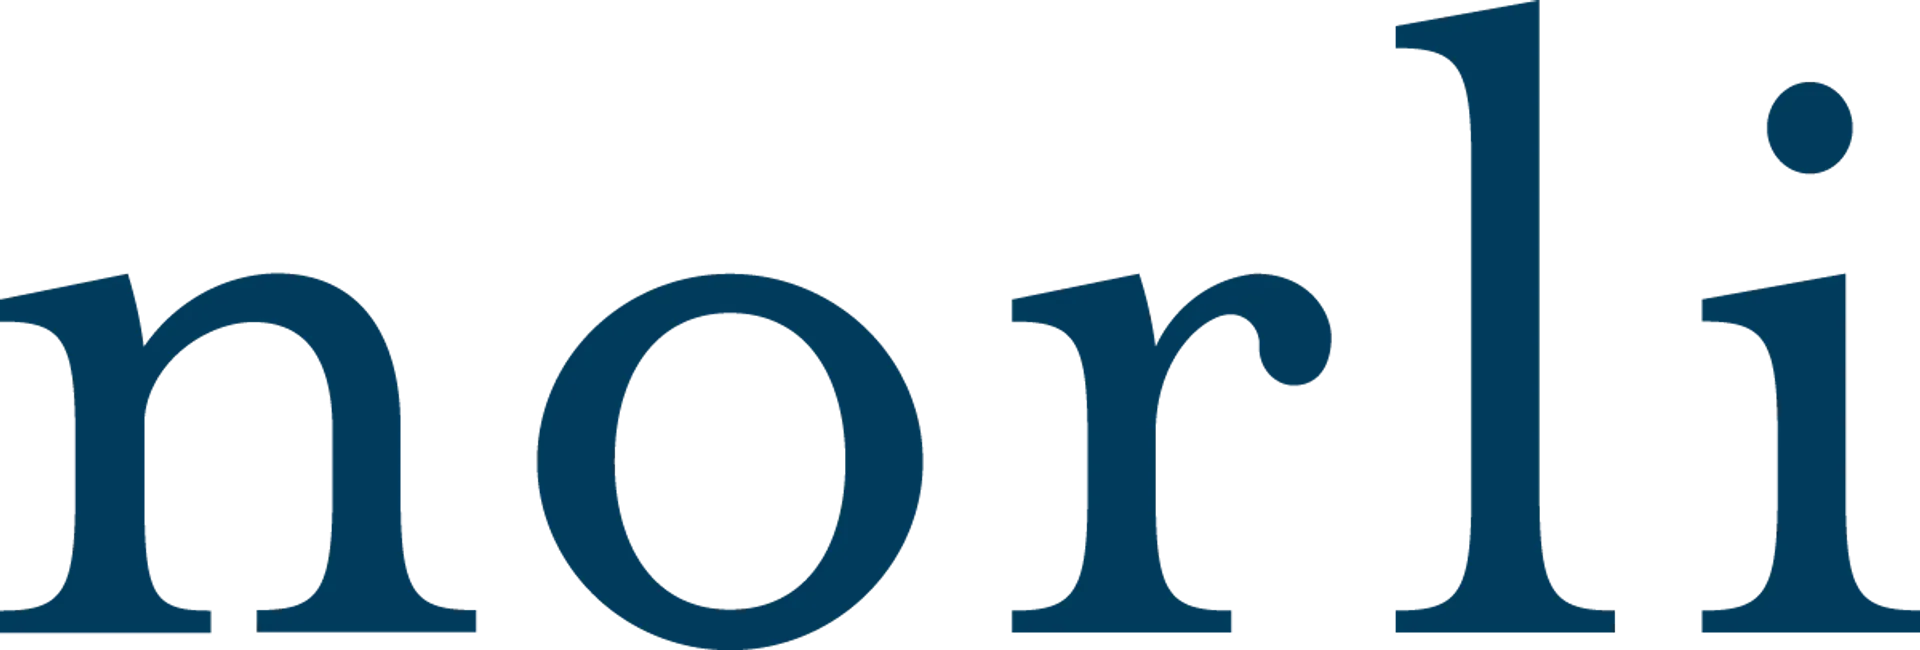 NORLI logo